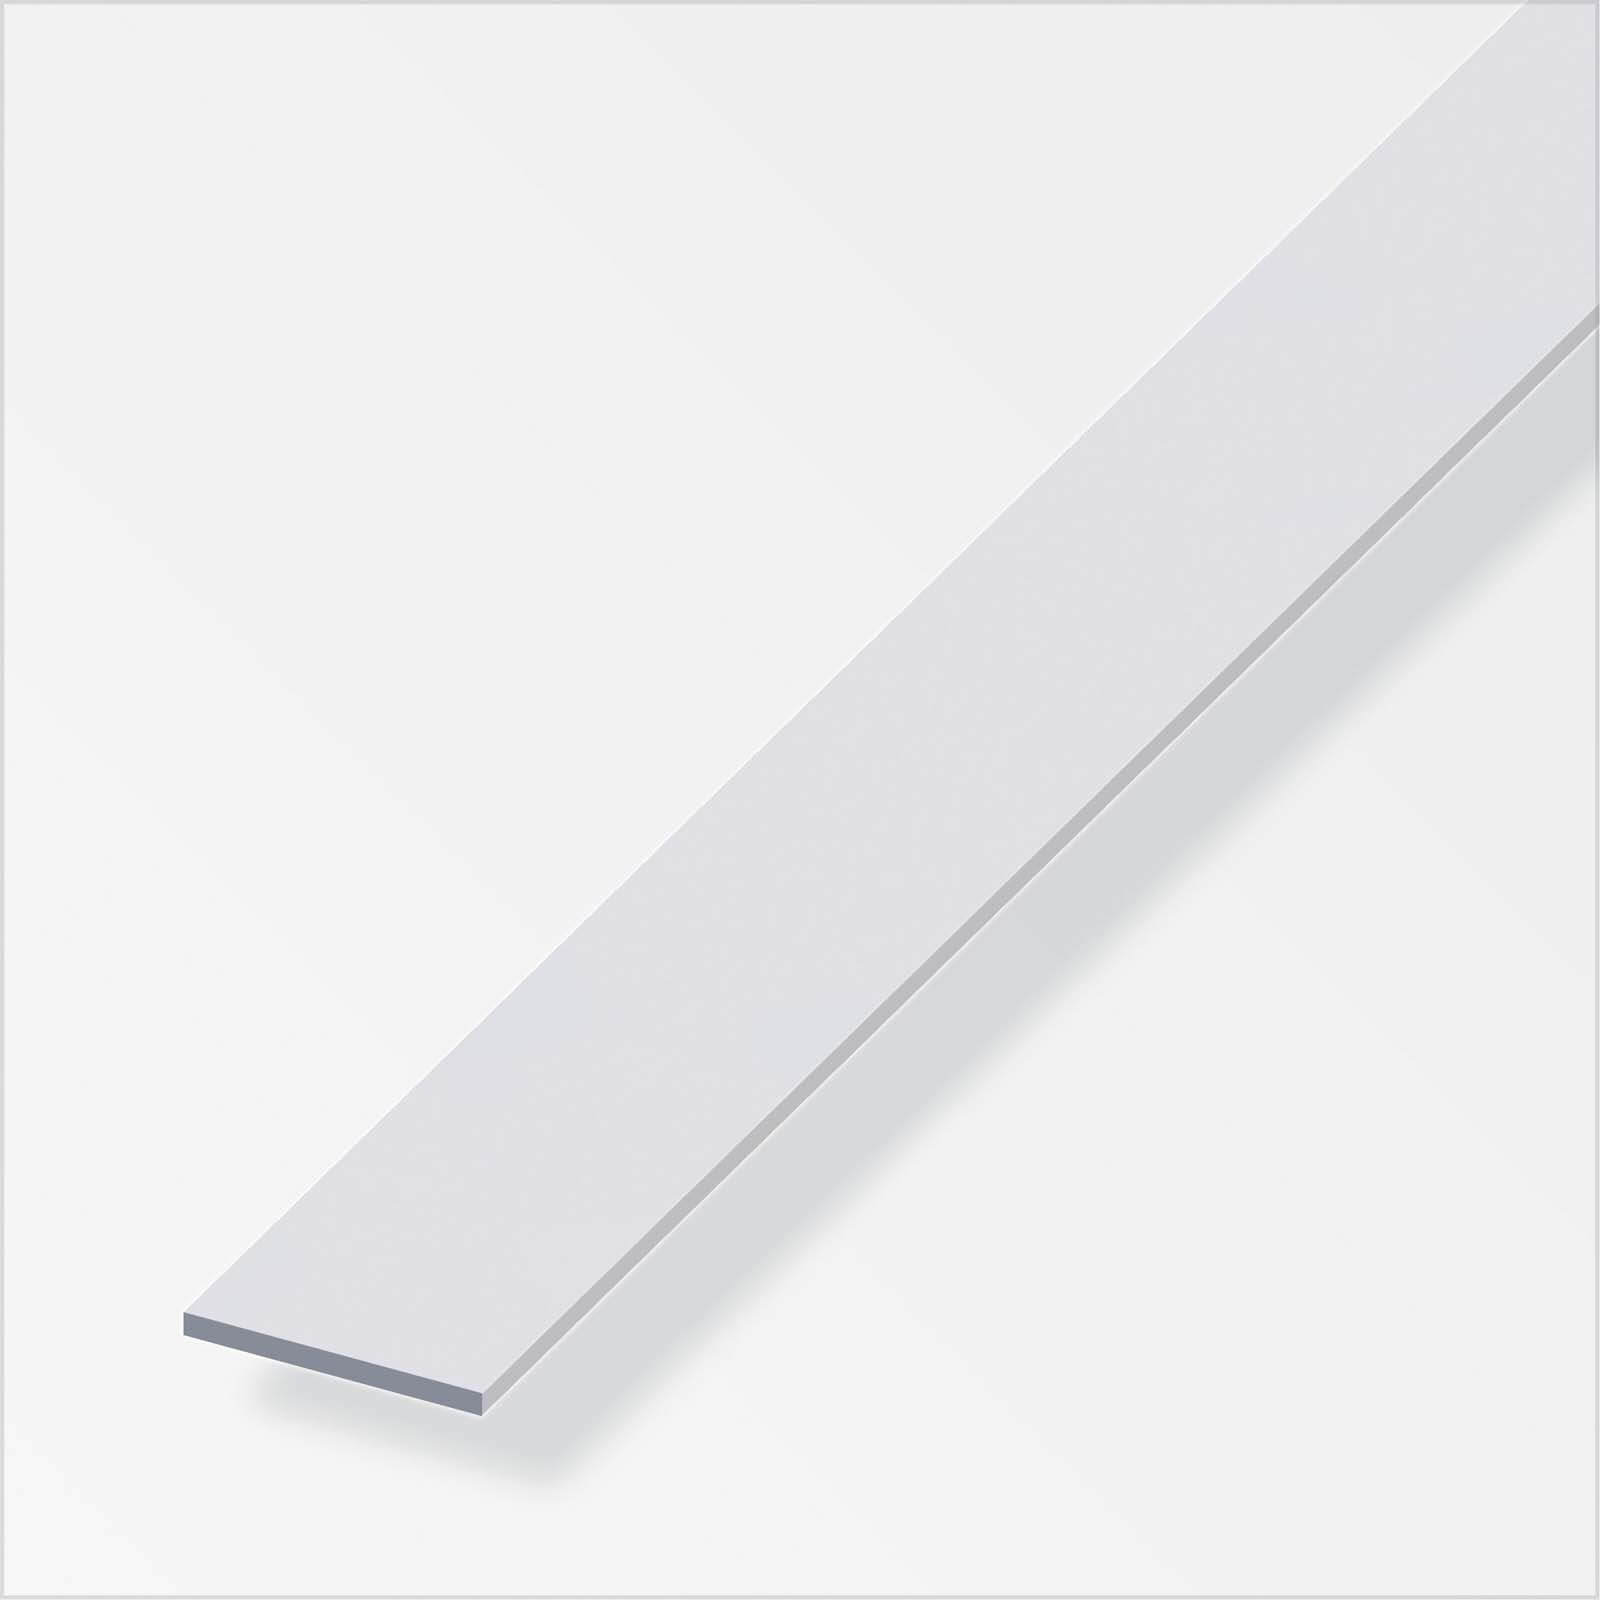 Anodised Aluminium Flat Bar Profile - 1m x 25mm